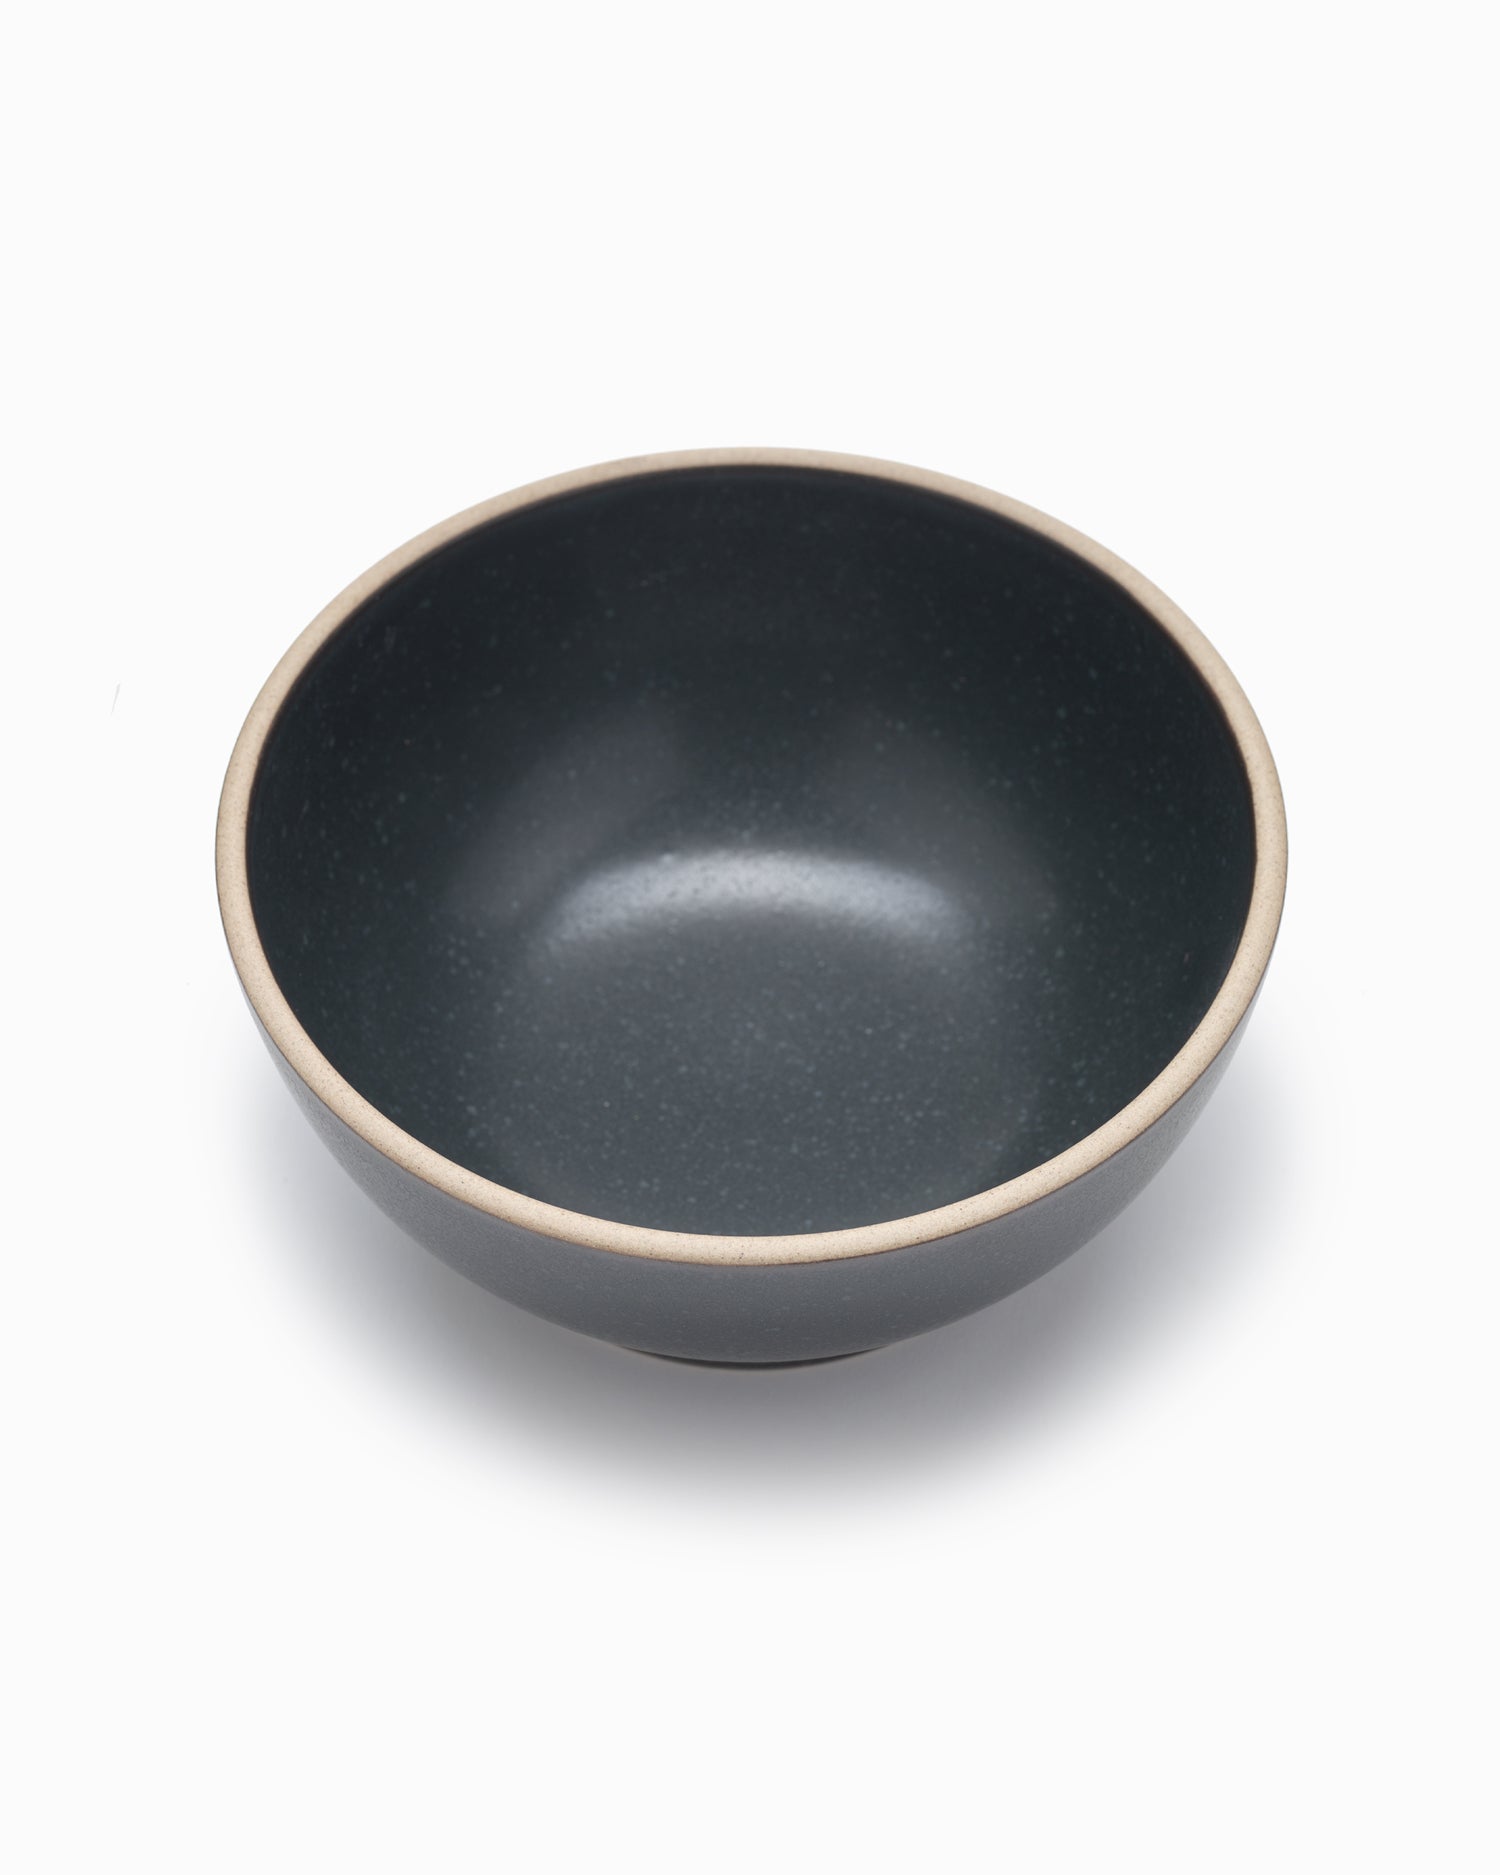 Nori Large Bowl - Black